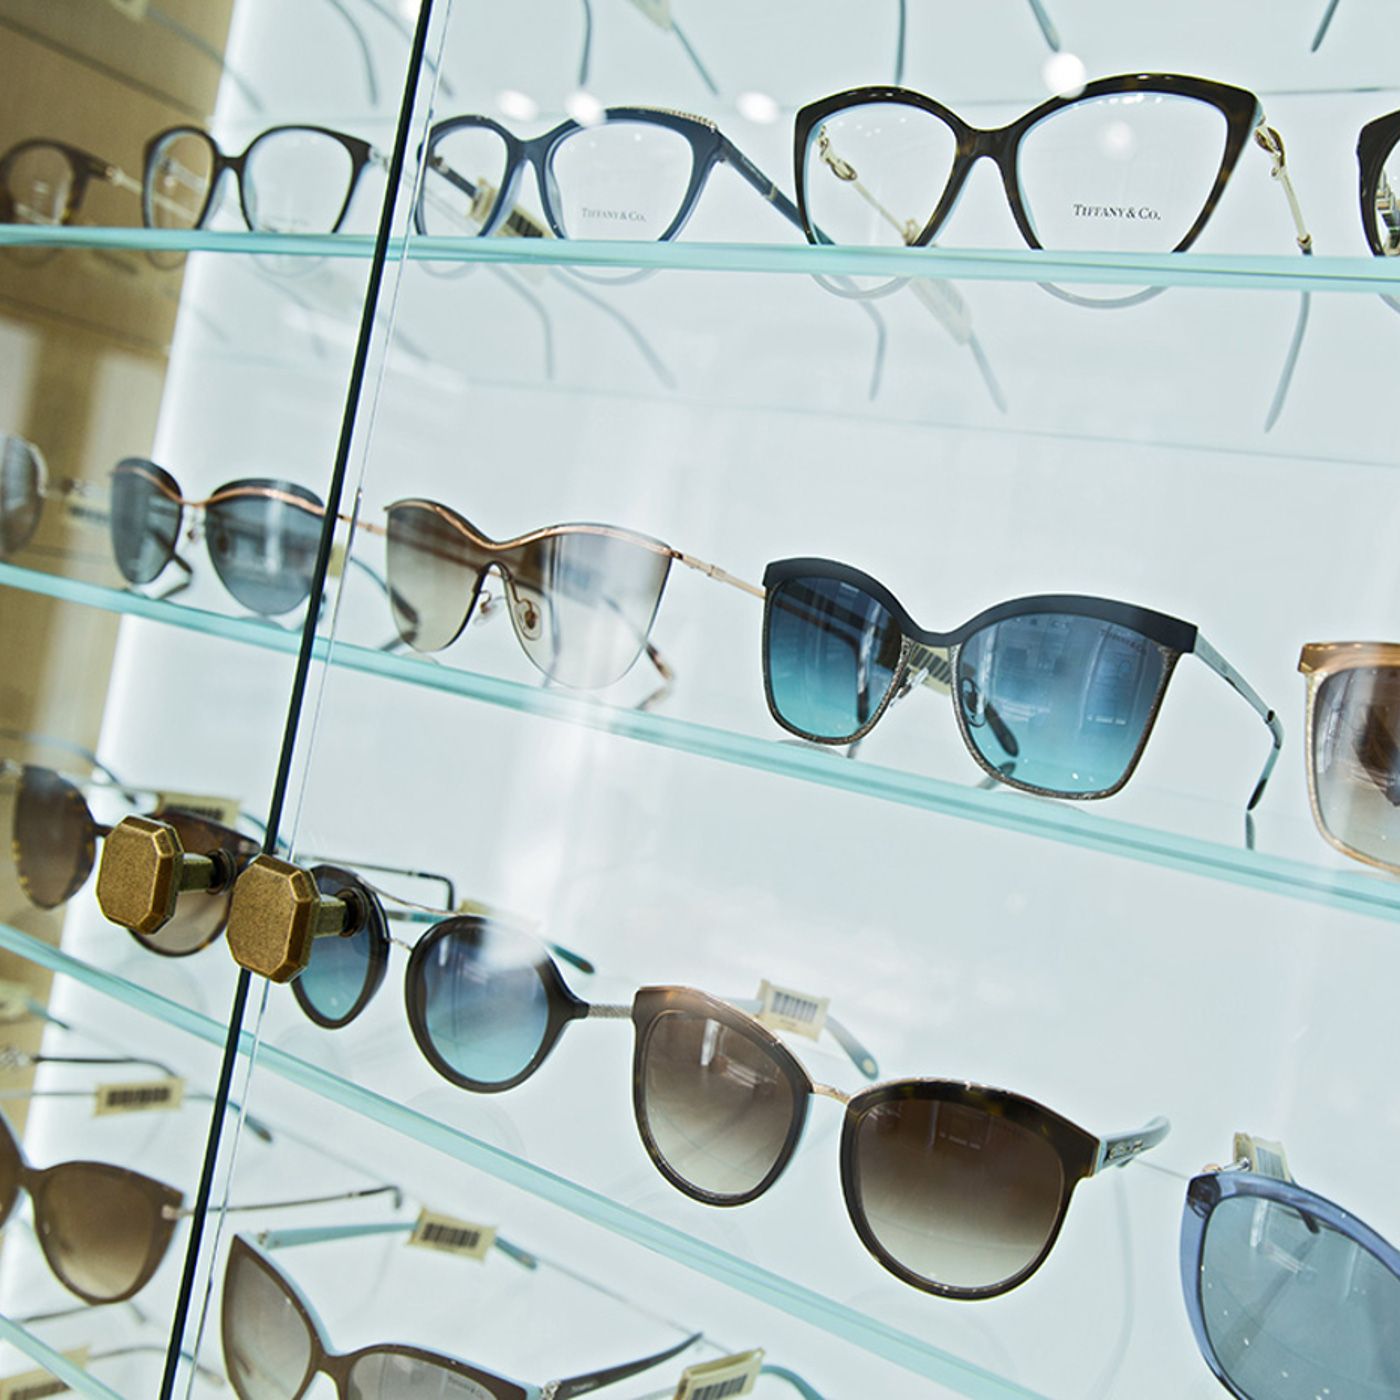 Солнцезащитные очки купить в нижнем новгороде. ГУМ очки магазин. Витрина для солнечных очков. Ассортимент солнцезащитных очков. Солнцезащитные очки на витрине.